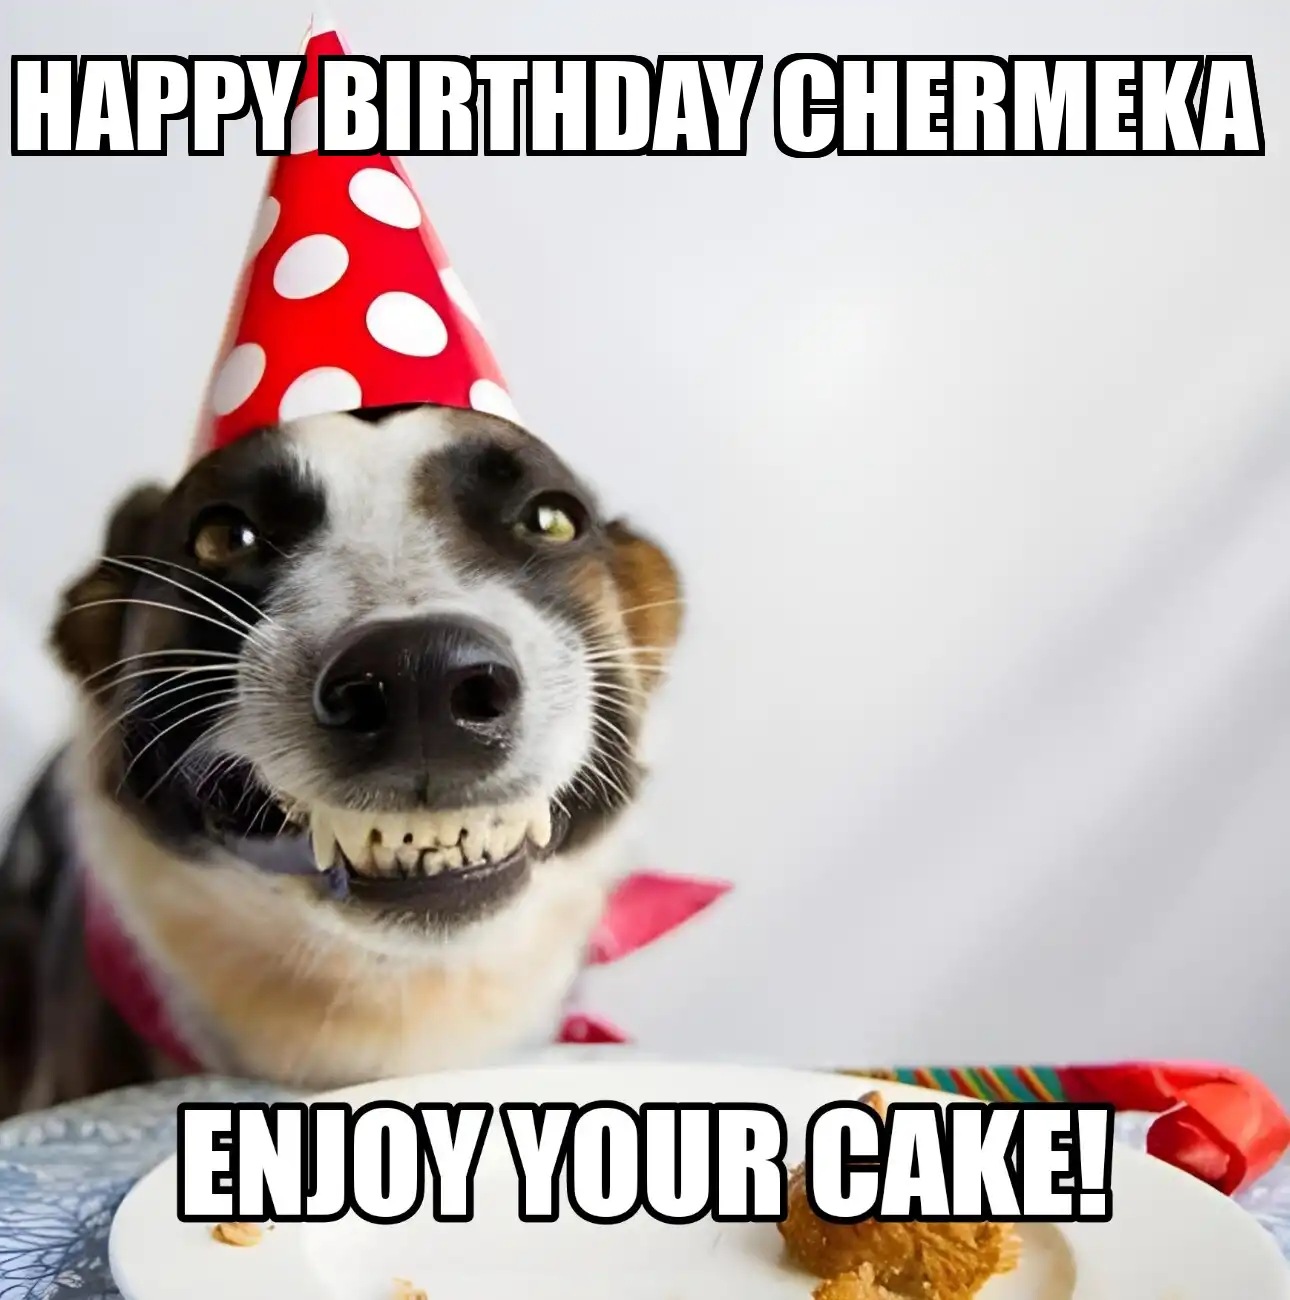 Happy Birthday Chermeka Enjoy Your Cake Dog Meme